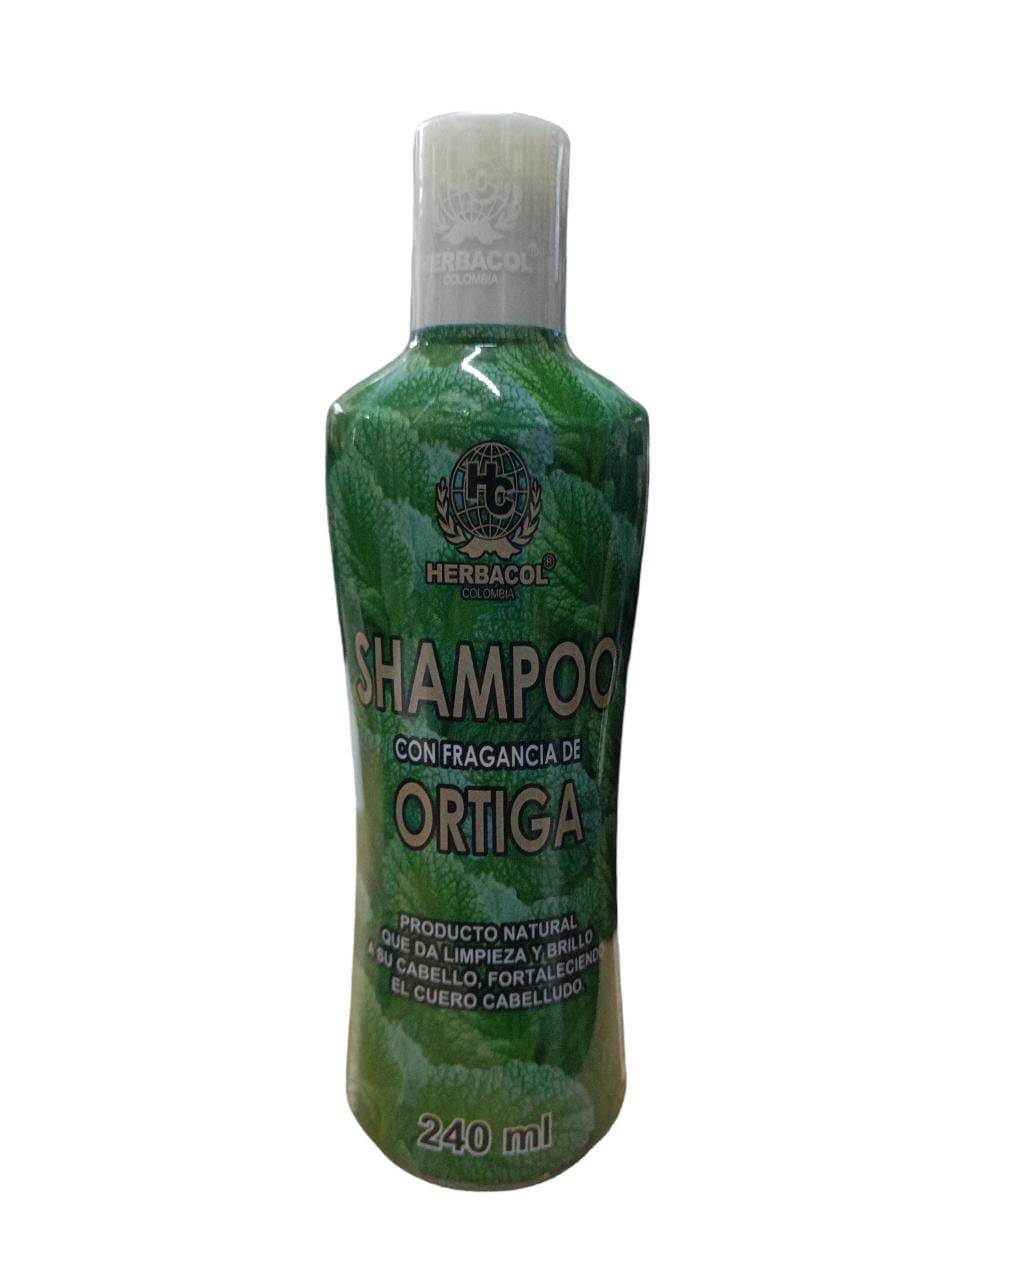 Shampoo con fragancia de ortiga x 240ml